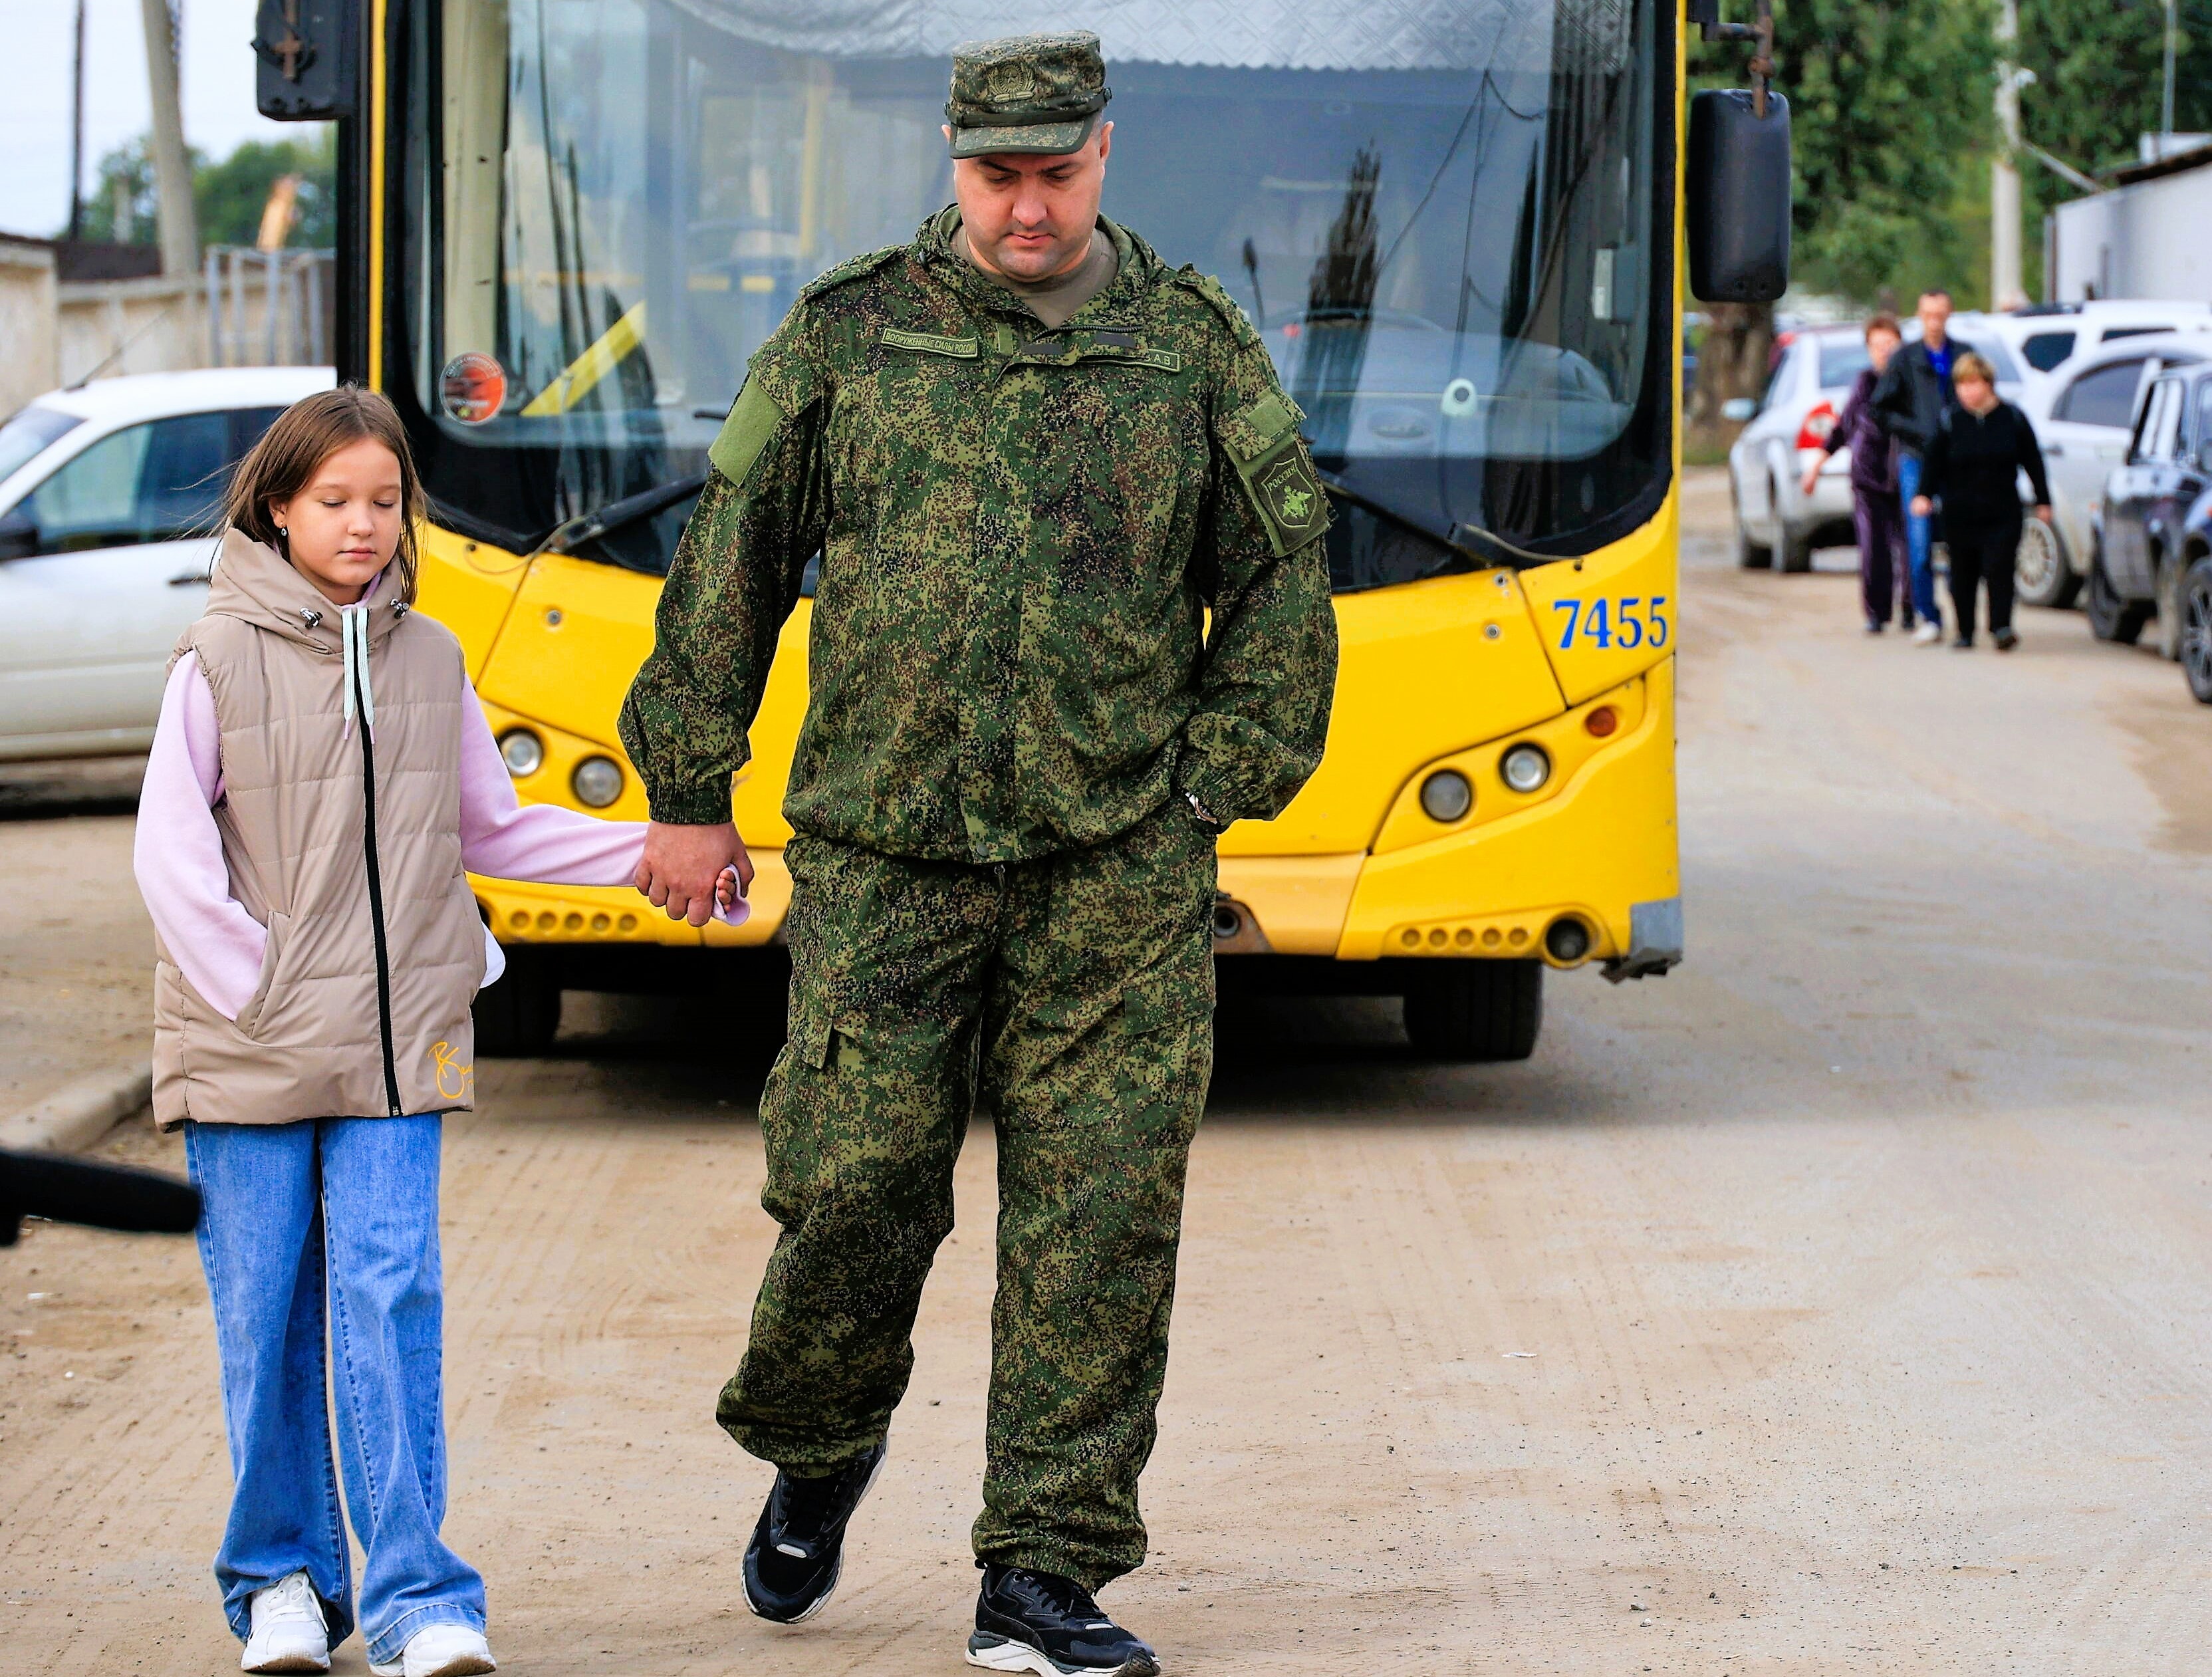 20.000 ukrainische Kinder vermisst und entführt - Wladimir Klitschko schlägt Alarm - die Welt muss reagieren!